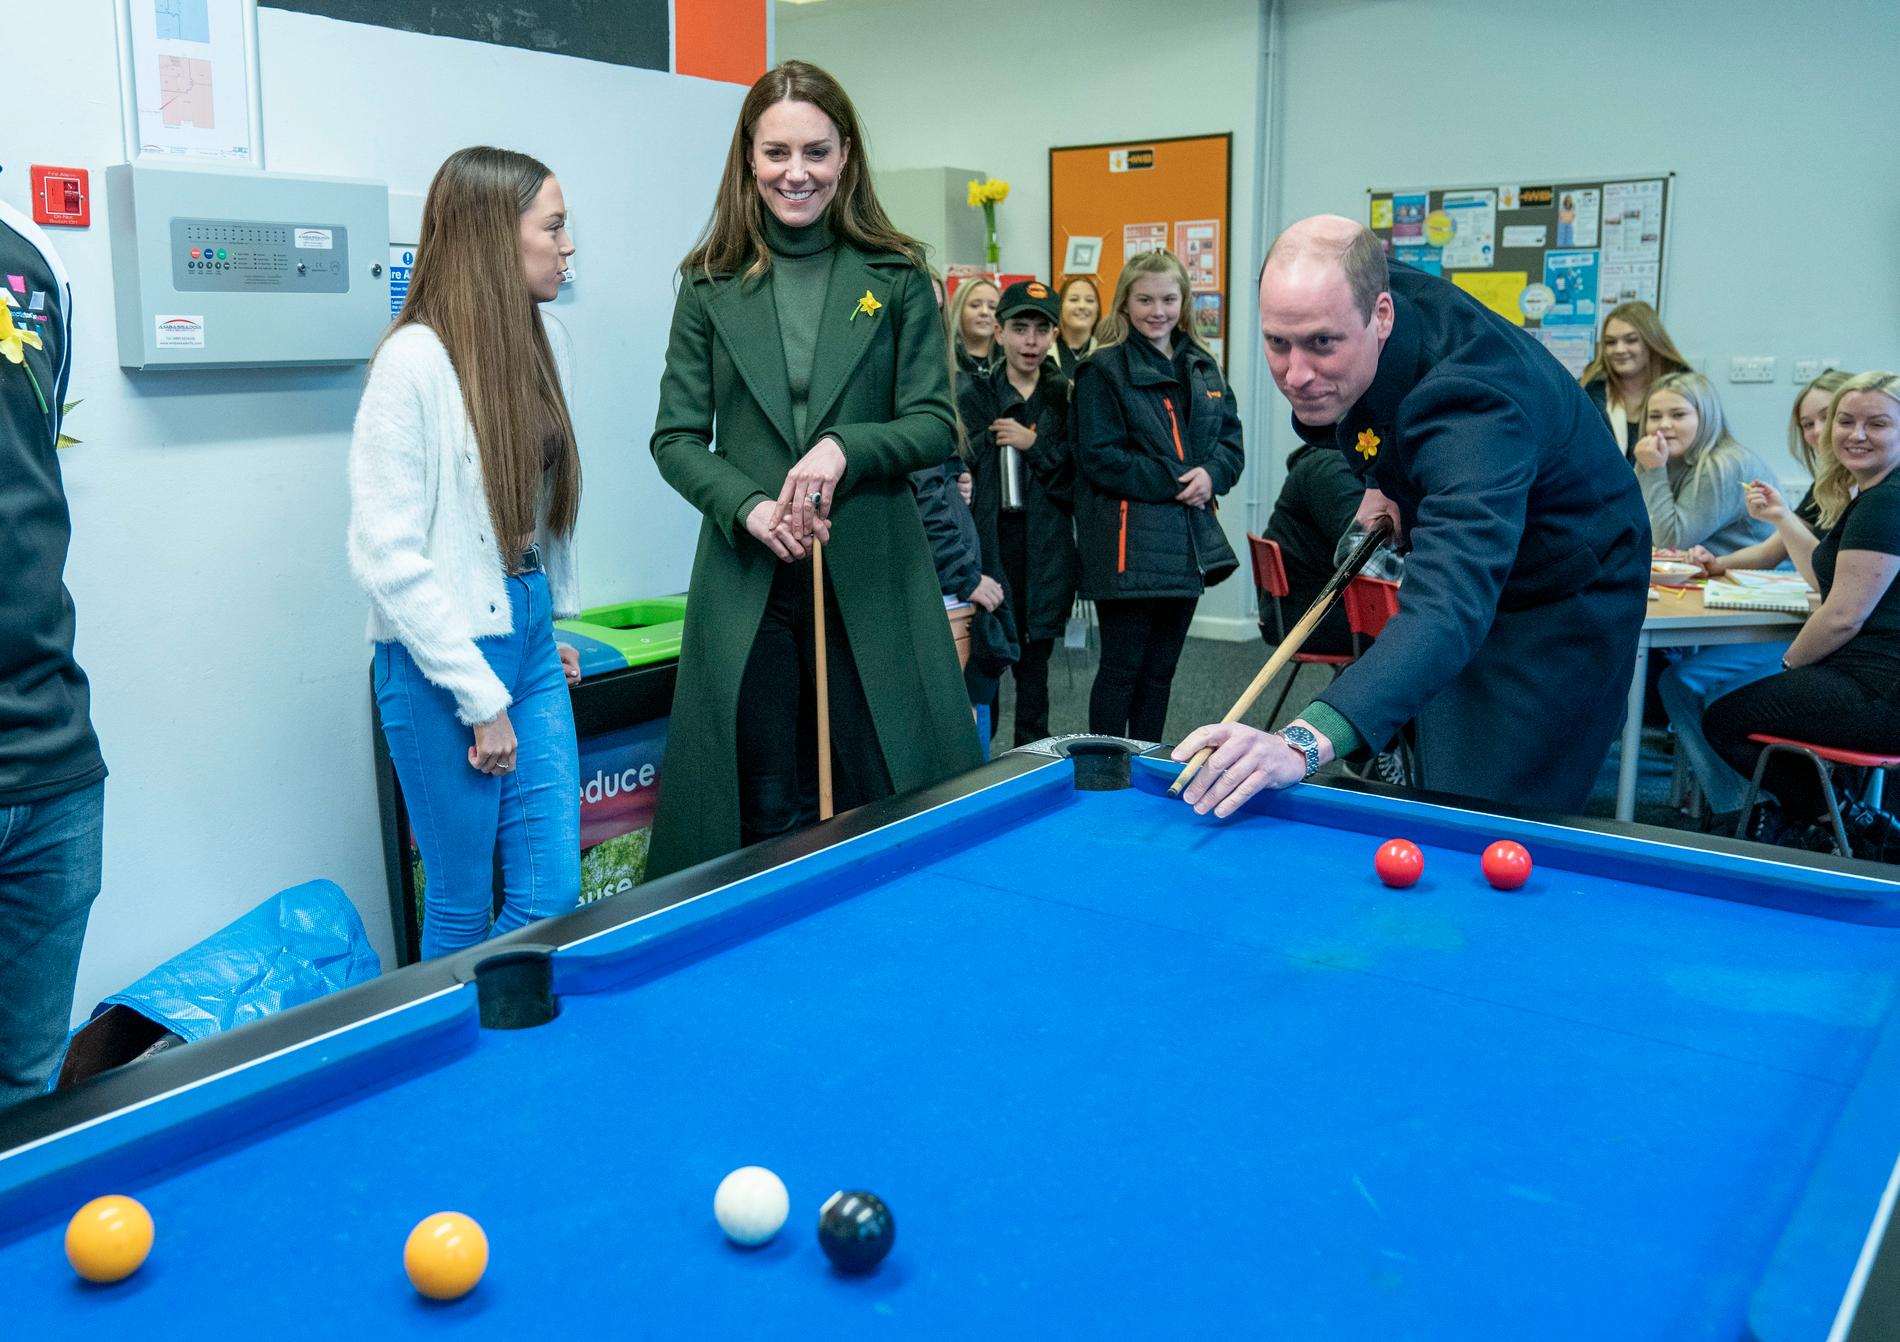 Prins William och Kate spelar biljard under ett besök i Wales.